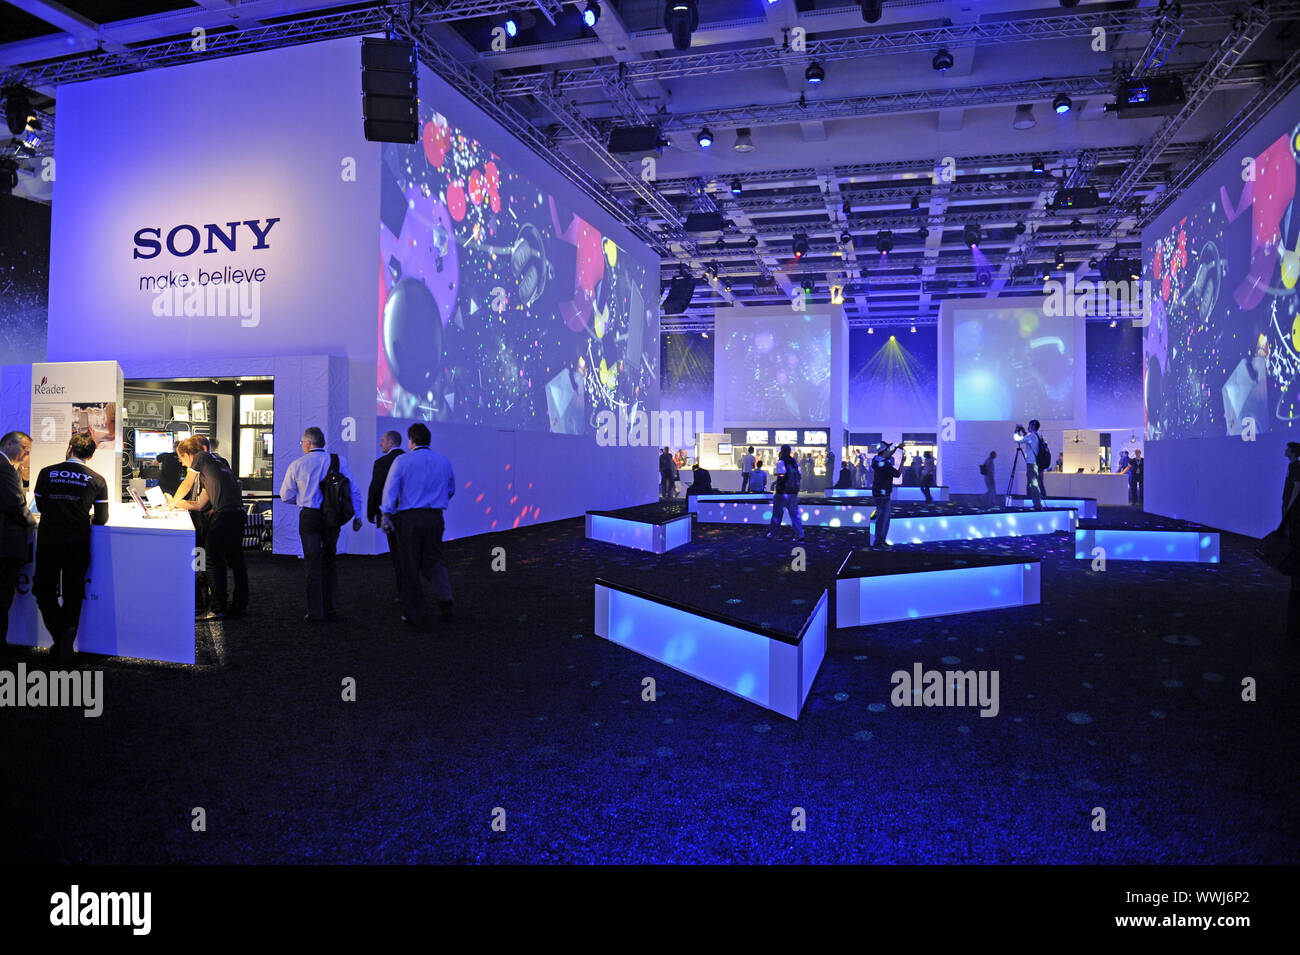 L'espace d'exposition de Sony à l'IFA 2009 Exposition internationale de l'électronique grand public à Berlin Banque D'Images